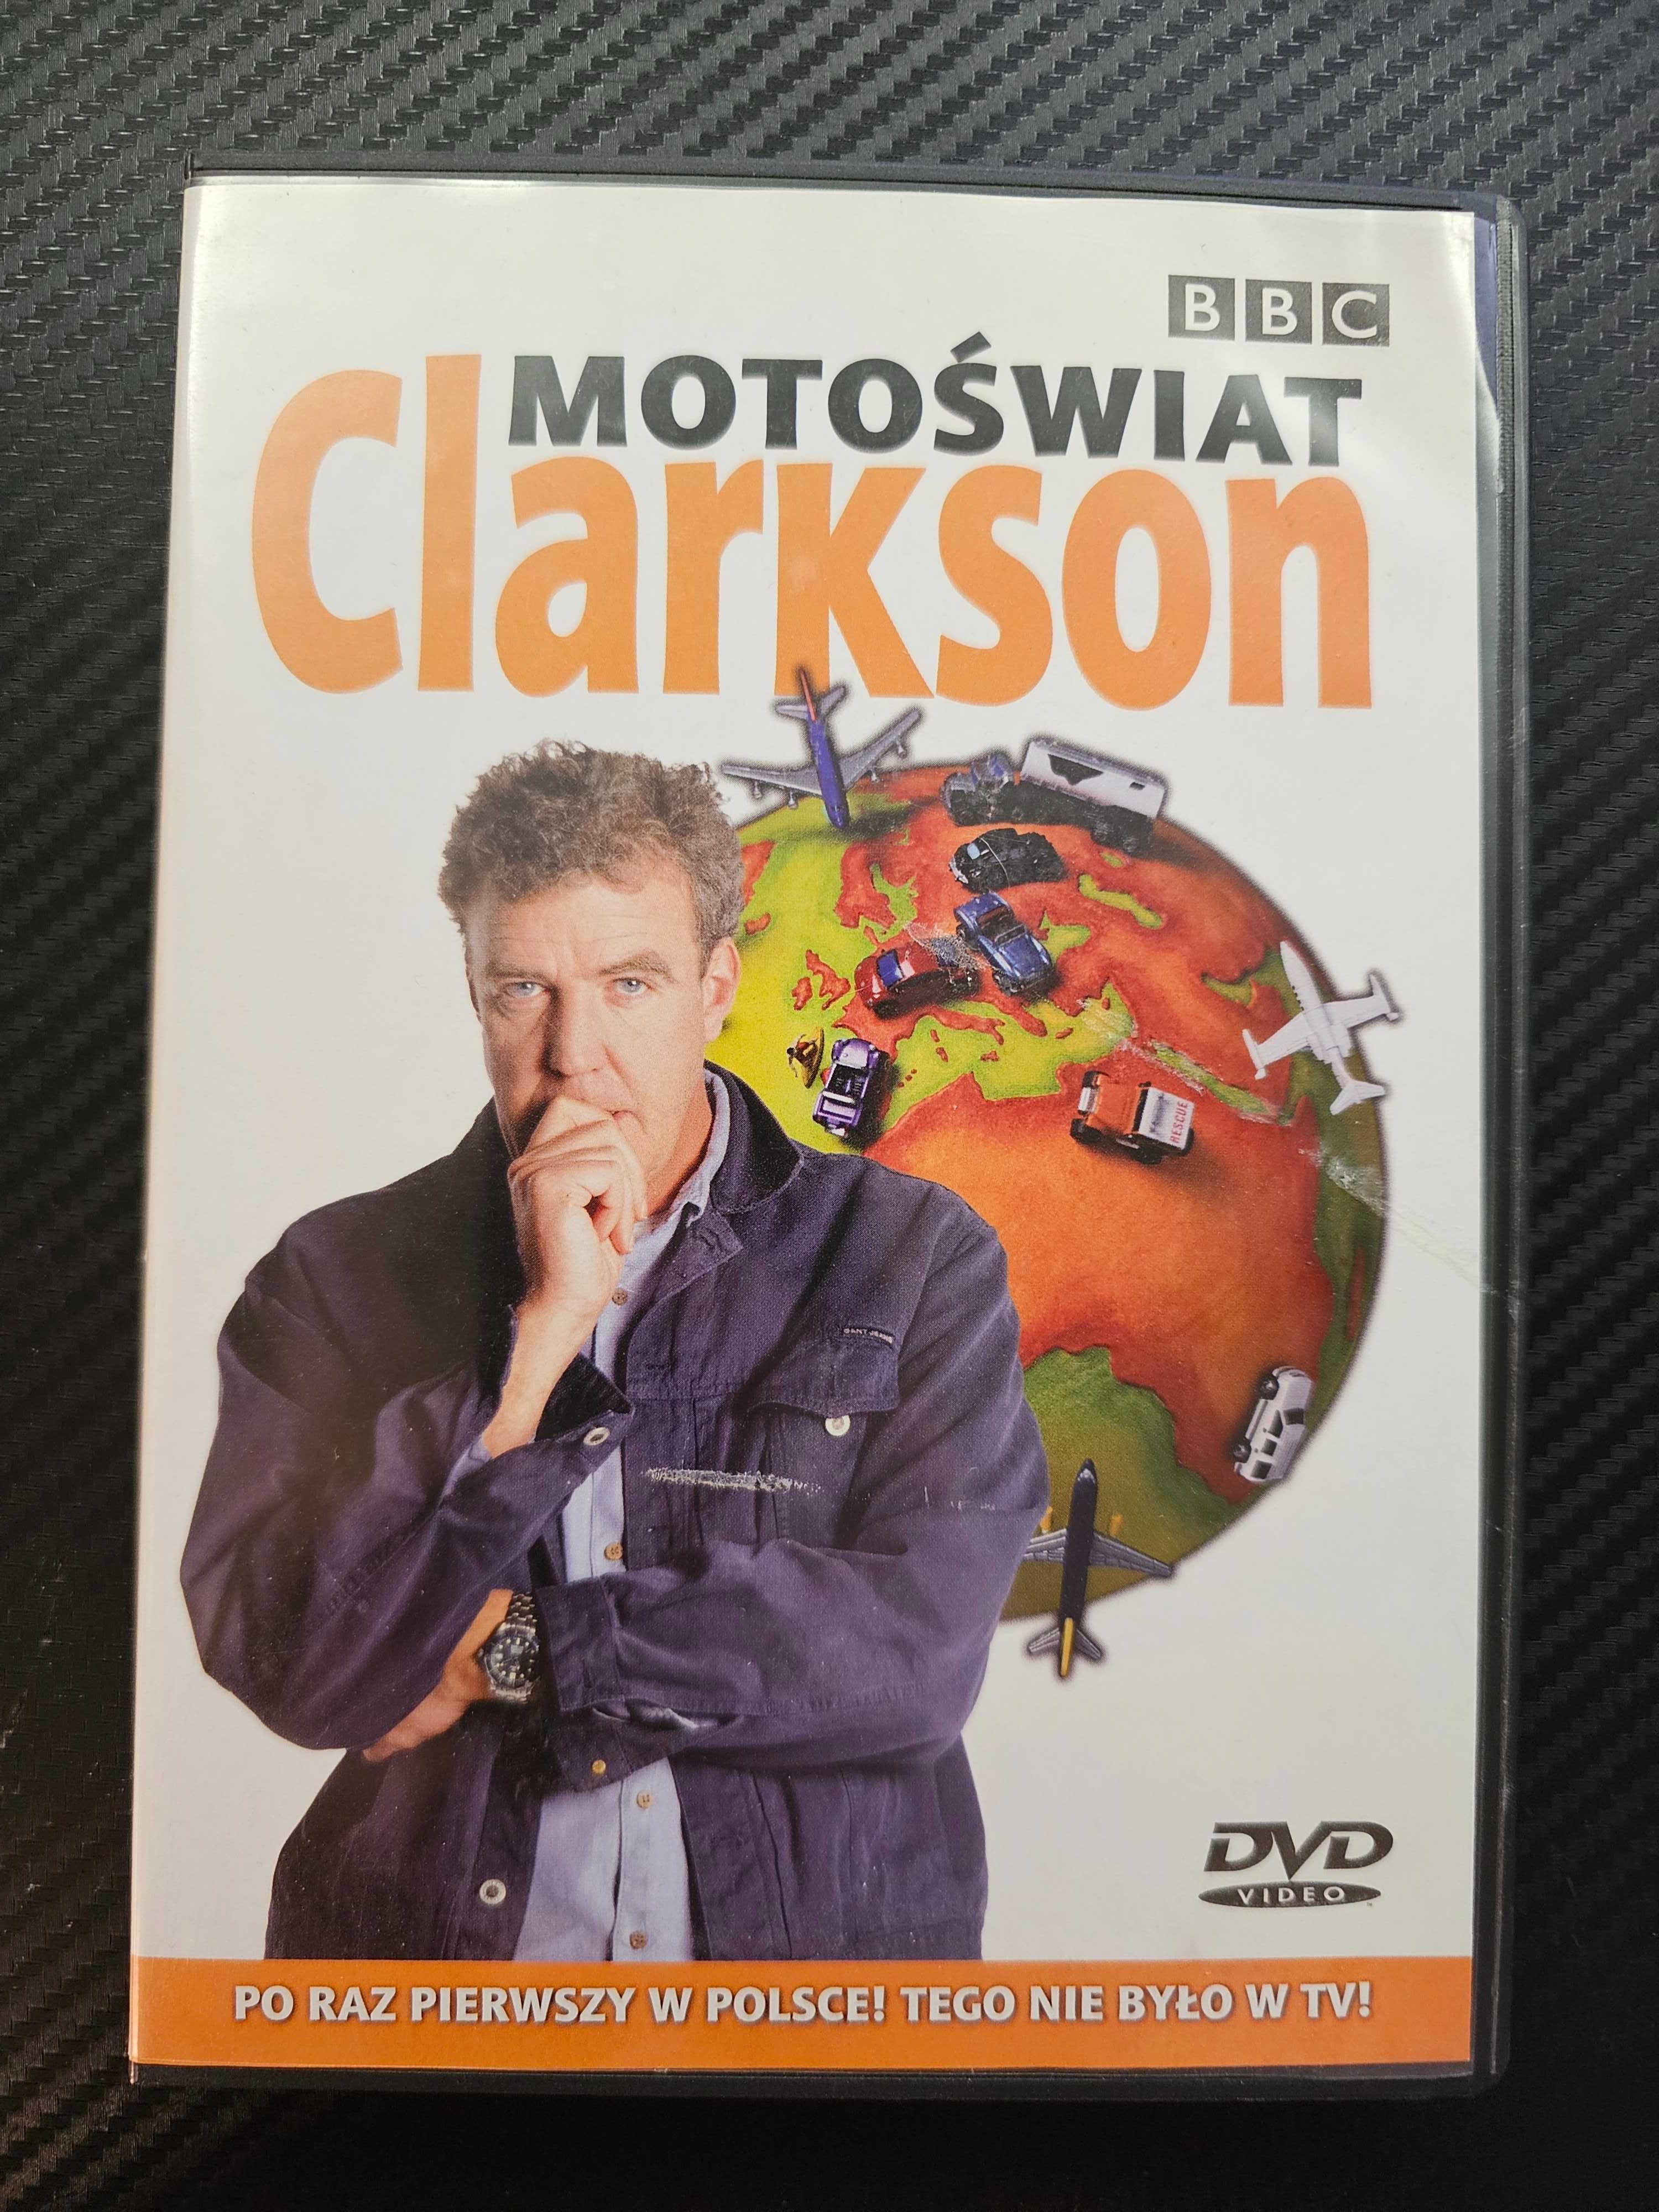 JEREMY CLARKSON - Motoświat DVD - Top Gear - Tego Nie Było w TV